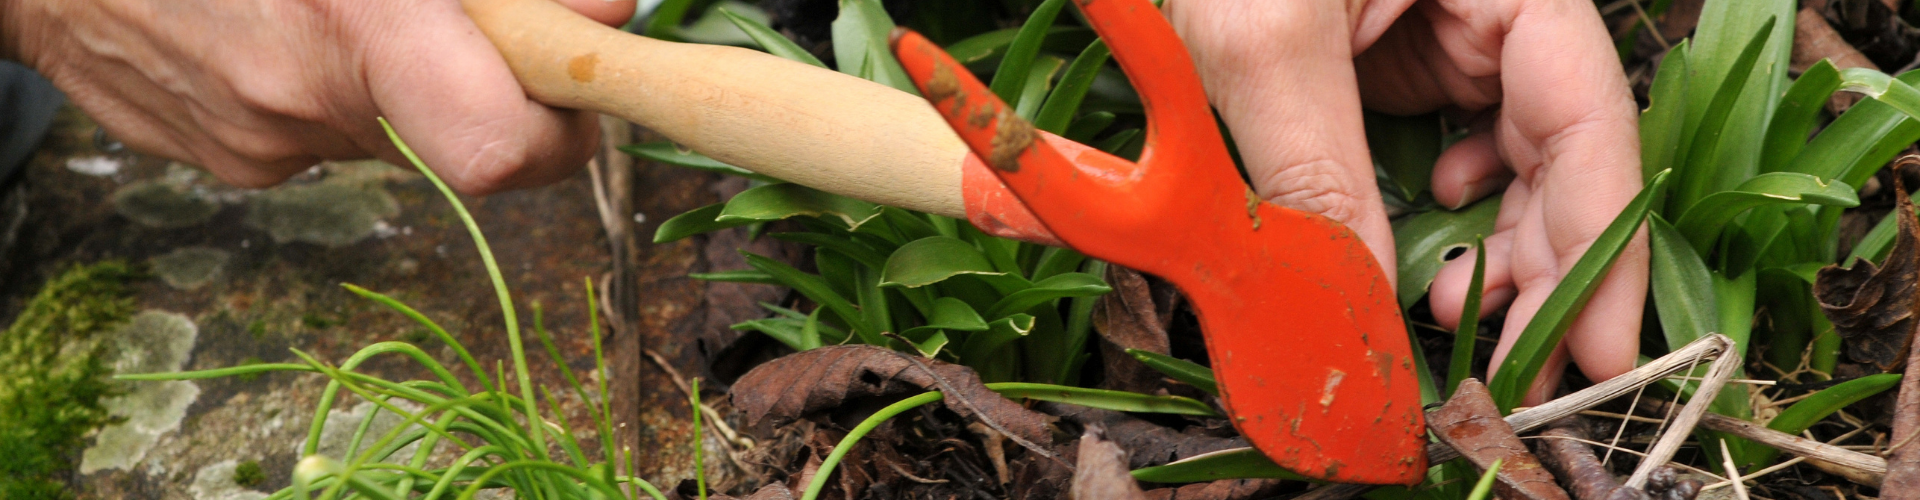 Les 8 outils indispensables au jardin - Blog - Dr. Jonquille & Mr. Ail